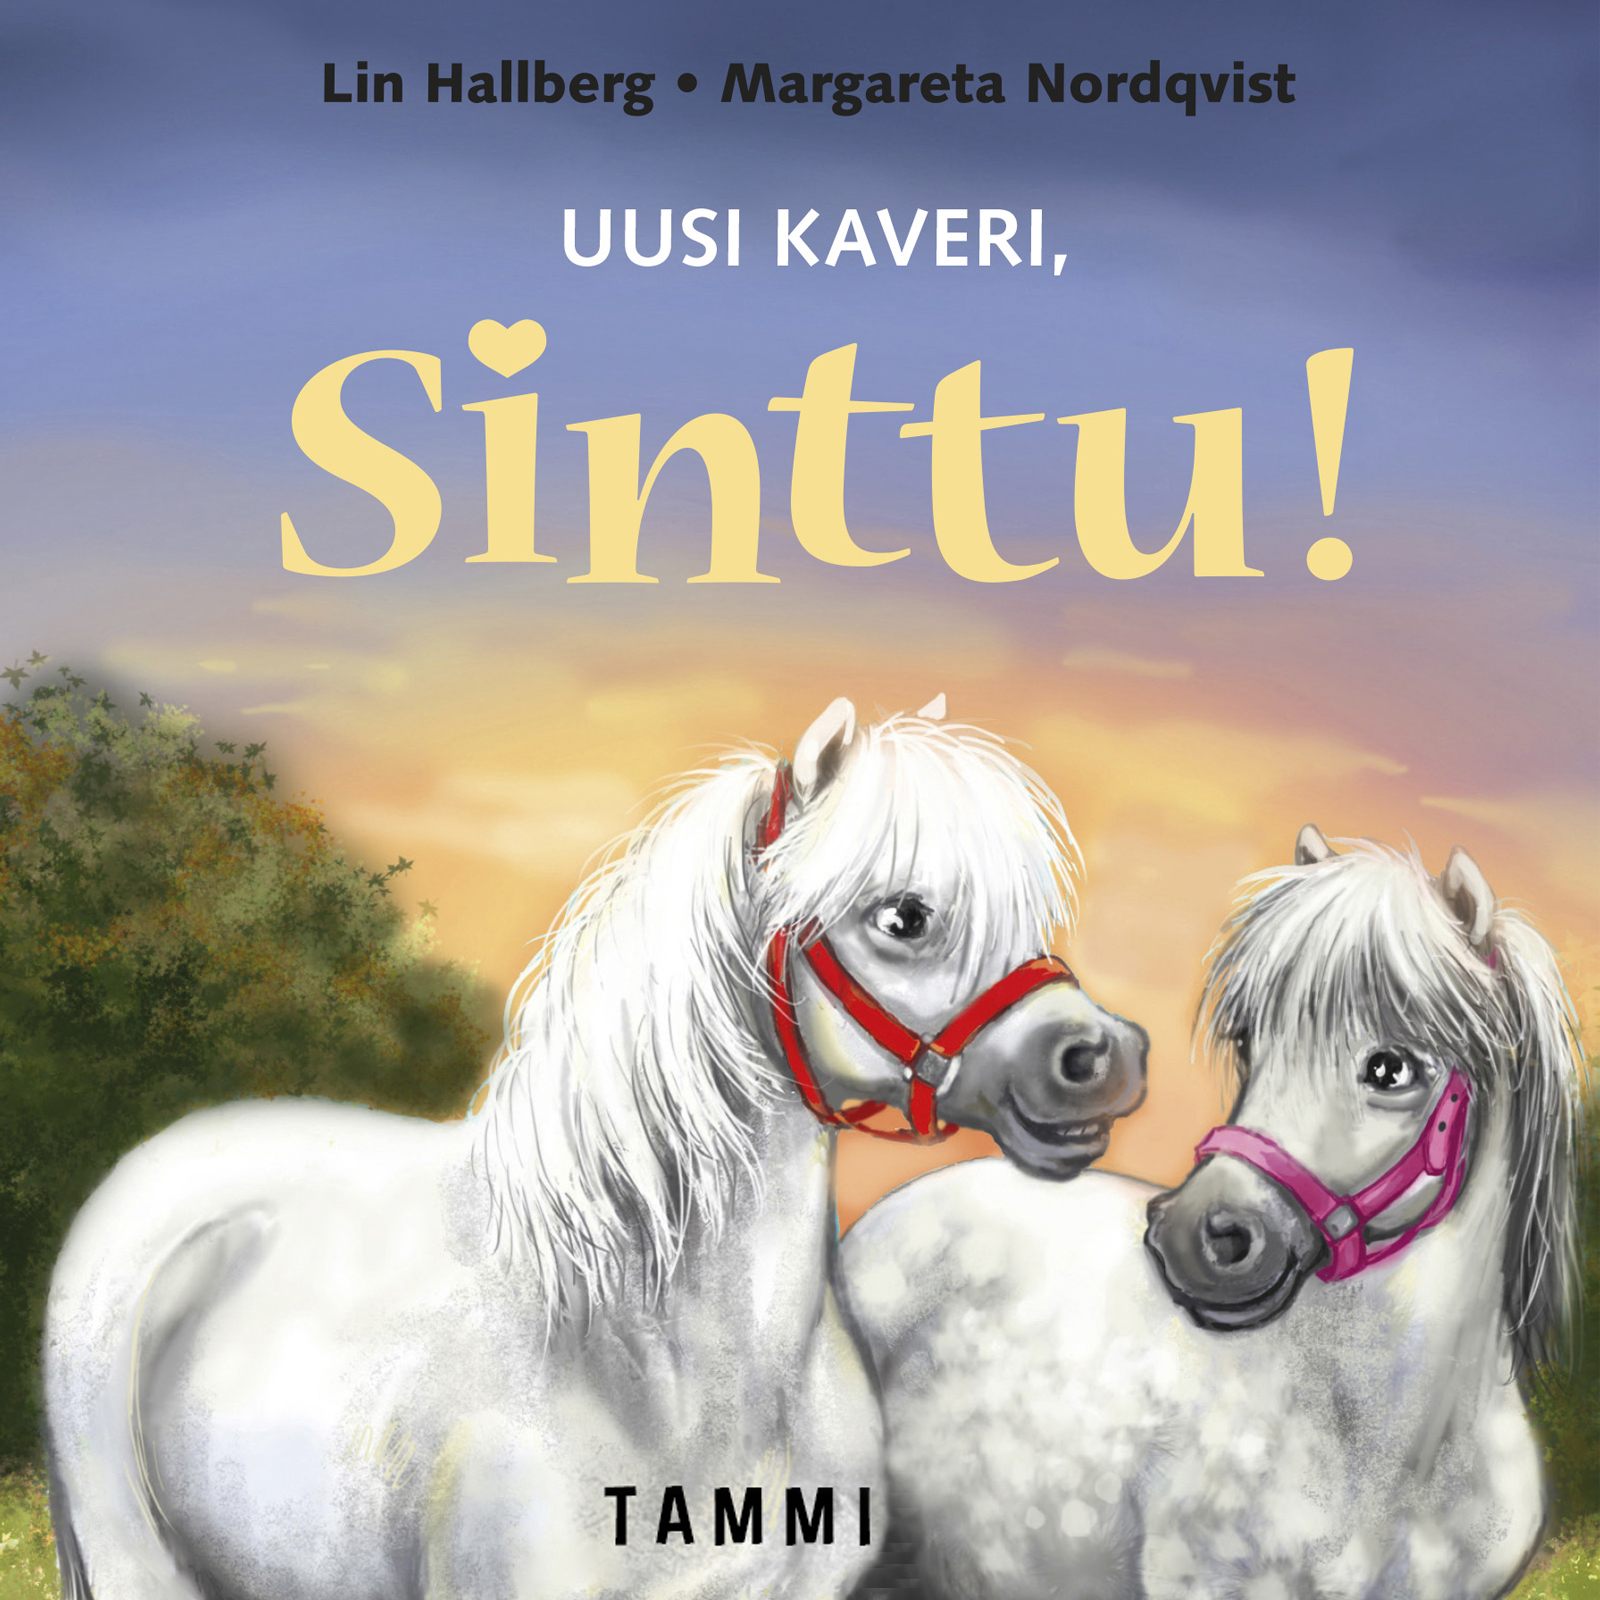 Hallberg, Lin - Uusi kaveri, Sinttu!, audiobook